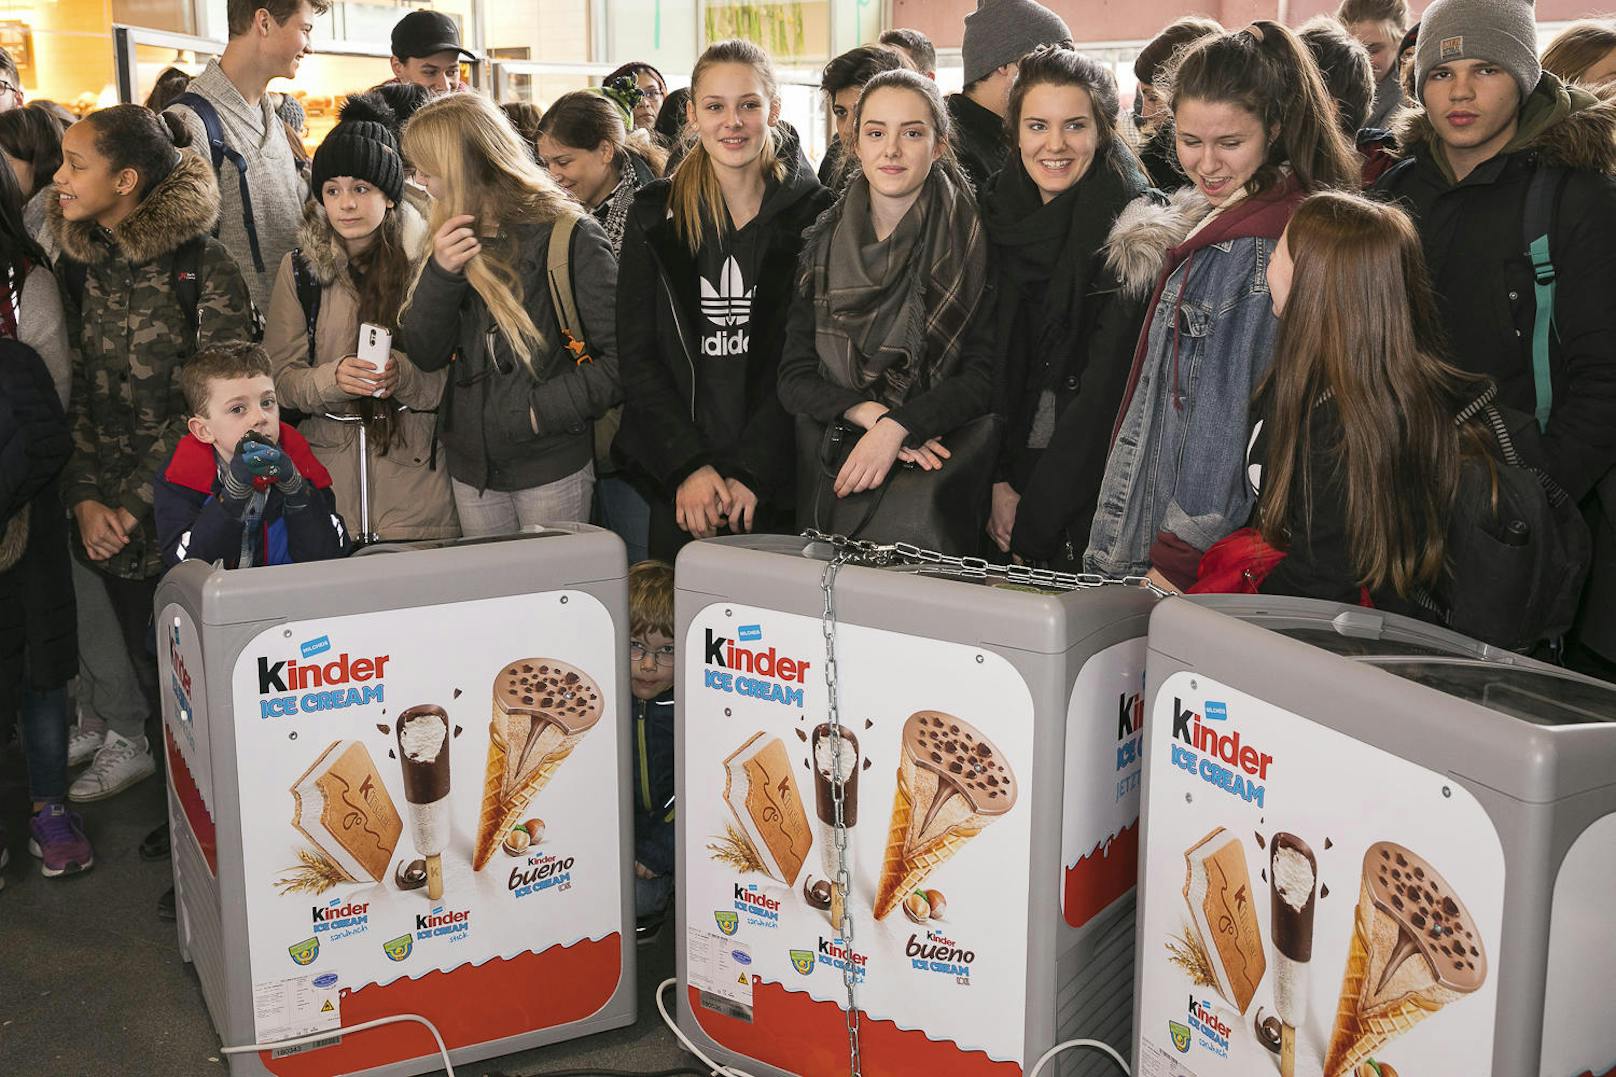 Heiß auf Eis? Ab sofort gibts von Kinder auch Gekühltes zum Naschen. Am Freitag werden im Wiener Museumsquartiert 2.000 Stück der neuen Eissorten gratis verteilt! In Innsbruck wurde bereits am Mittwoch Eis verteilt.